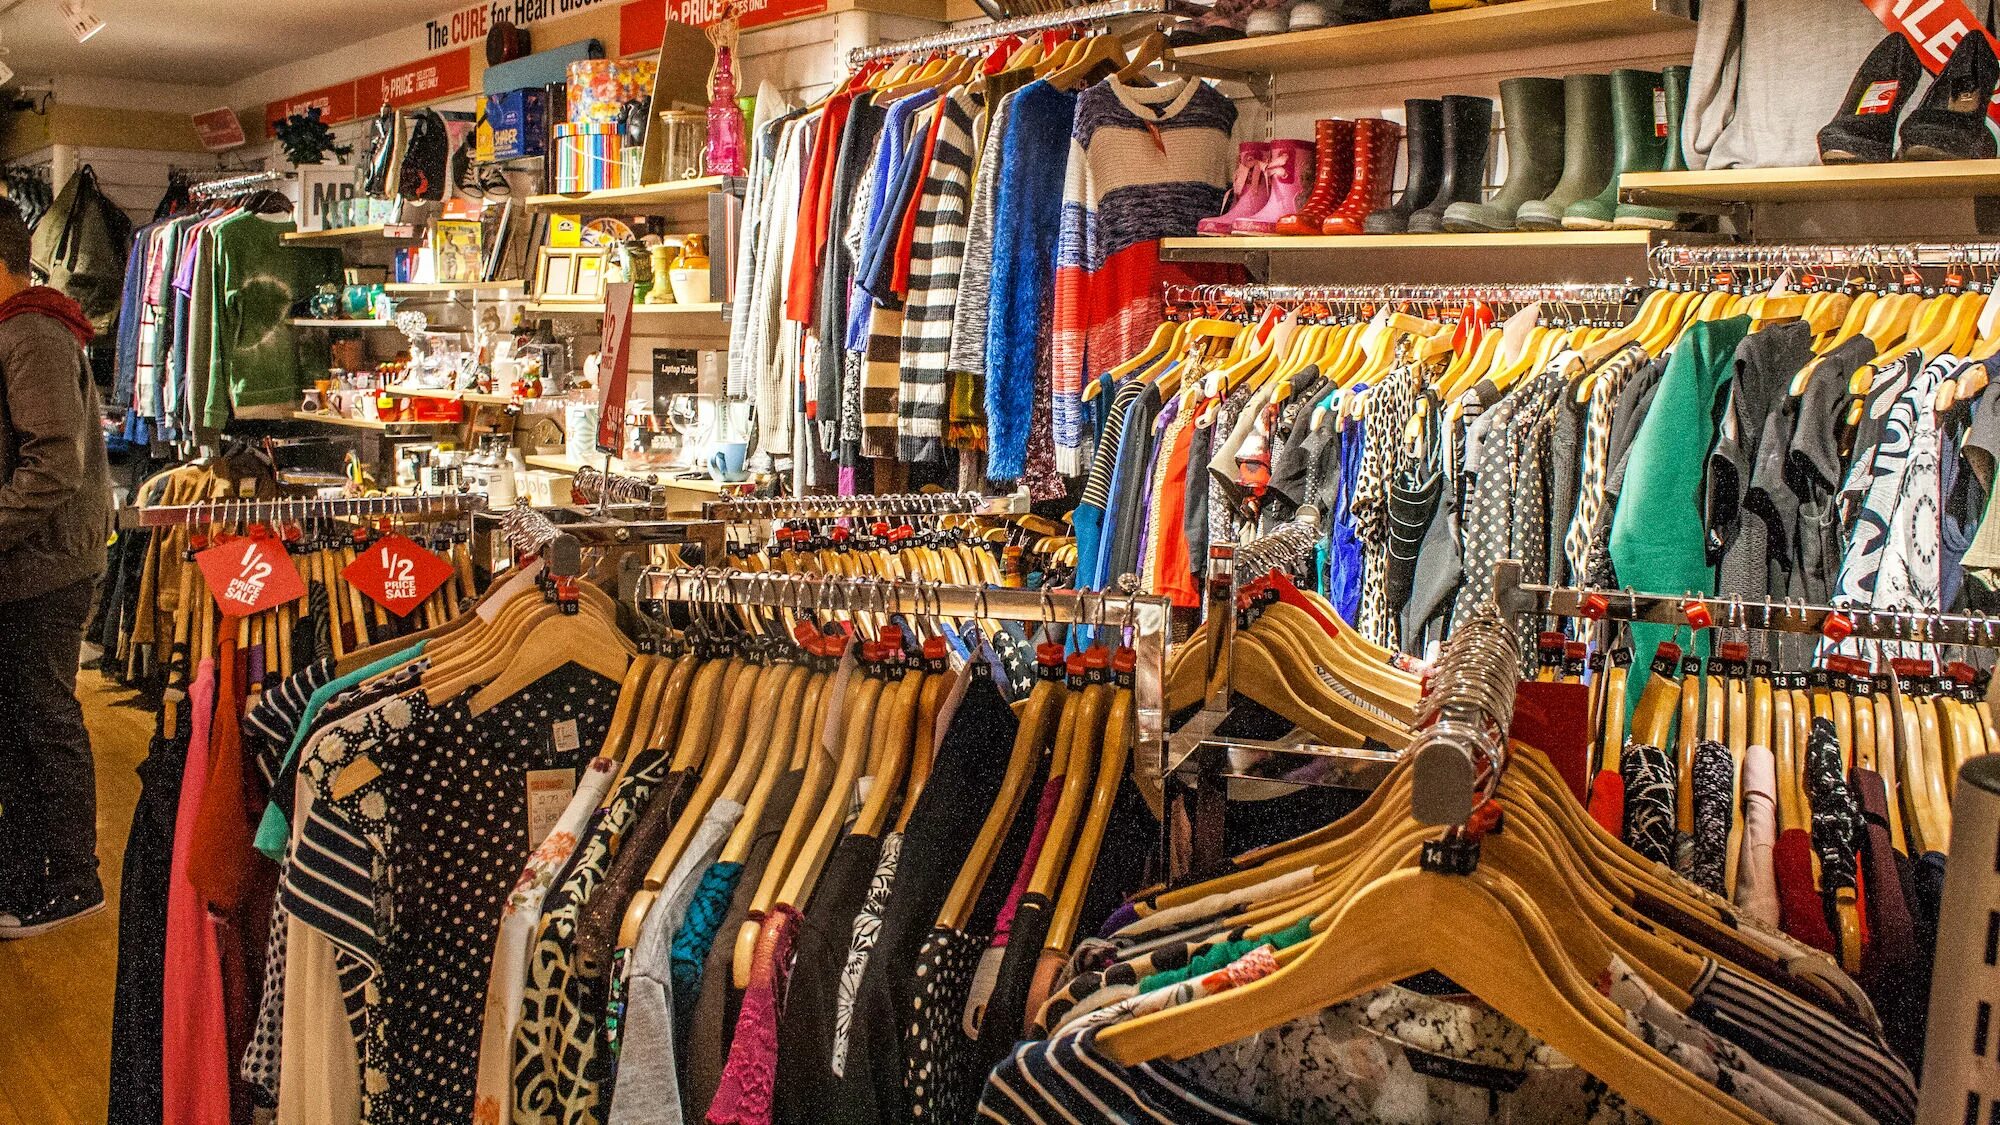 Items магазин одежды. Charity shops. Очень большие фотографии одежды в магазине. ЮАР Кейптаун шоппинг одежда.